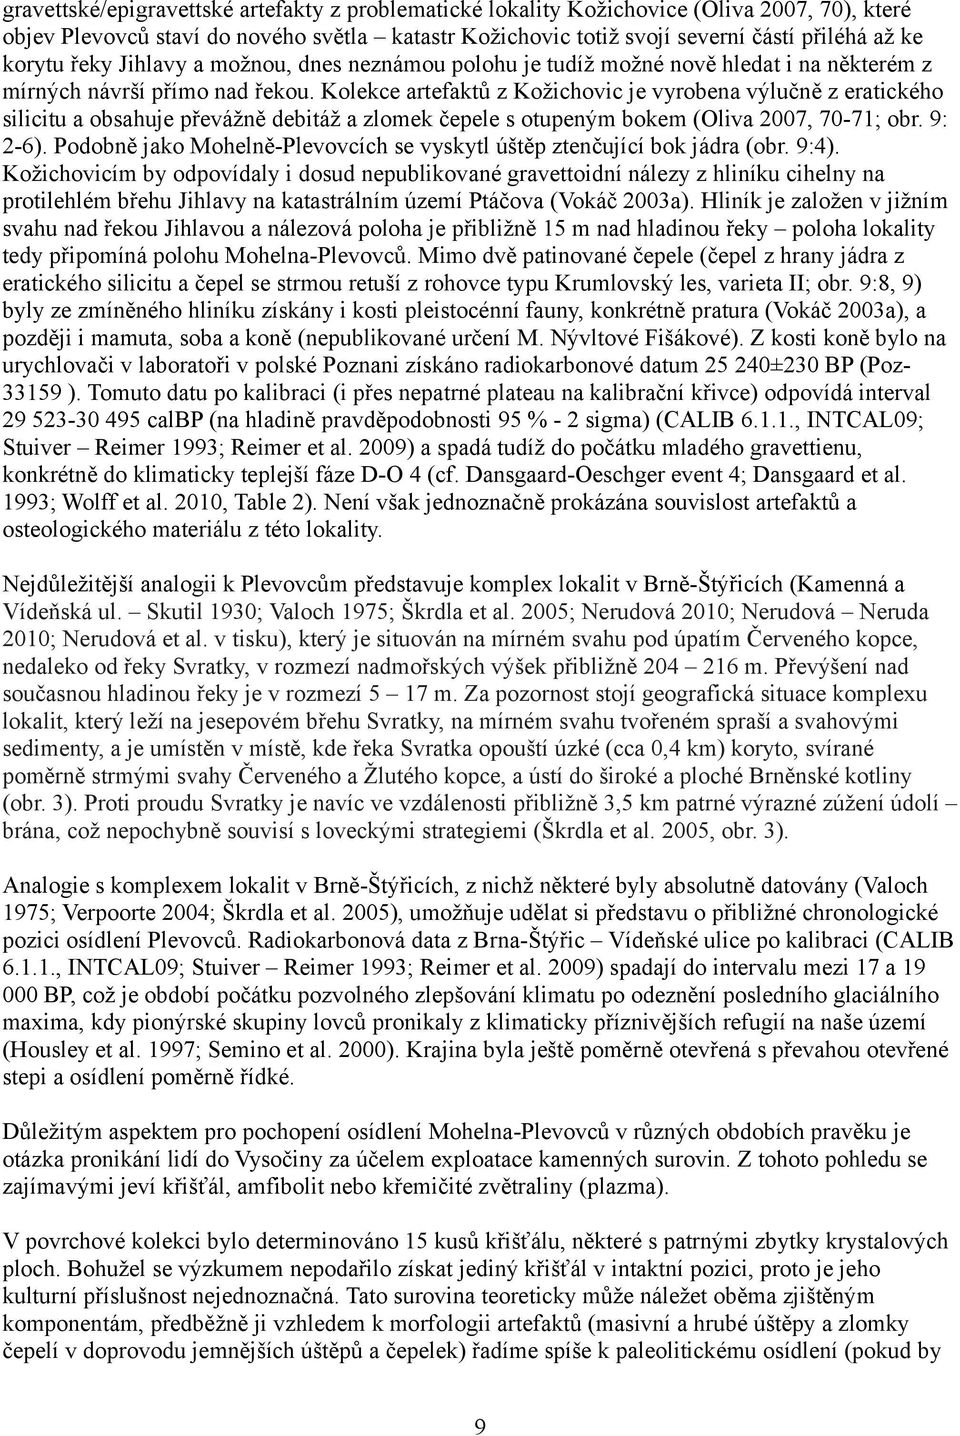 Kolekce artefaktů z Kožichovic je vyrobena výlučně z eratického silicitu a obsahuje převážně debitáž a zlomek čepele s otupeným bokem (Oliva 2007, 70-71; obr. 9: 2-6).